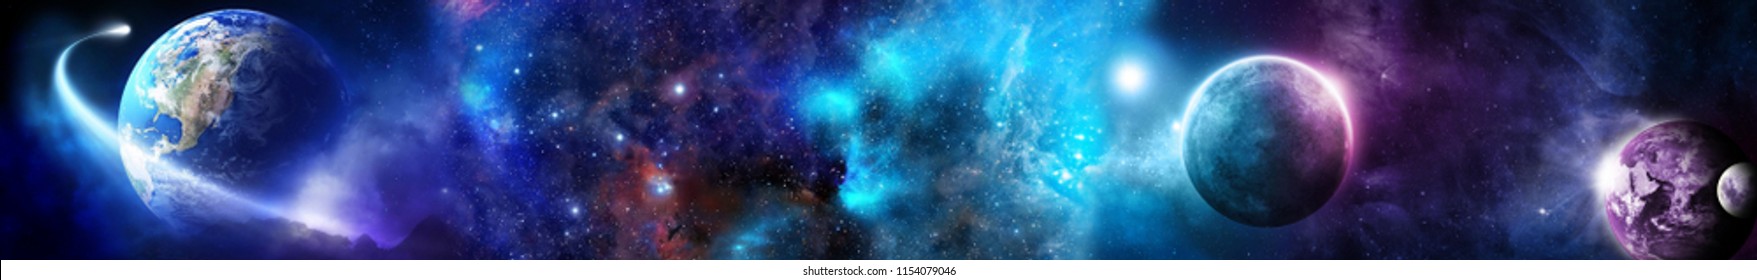 Космическая сцена с планетами, звездами и галактиками. Панорама. Горизонтальный вид для стеклянных панелей (skinali).